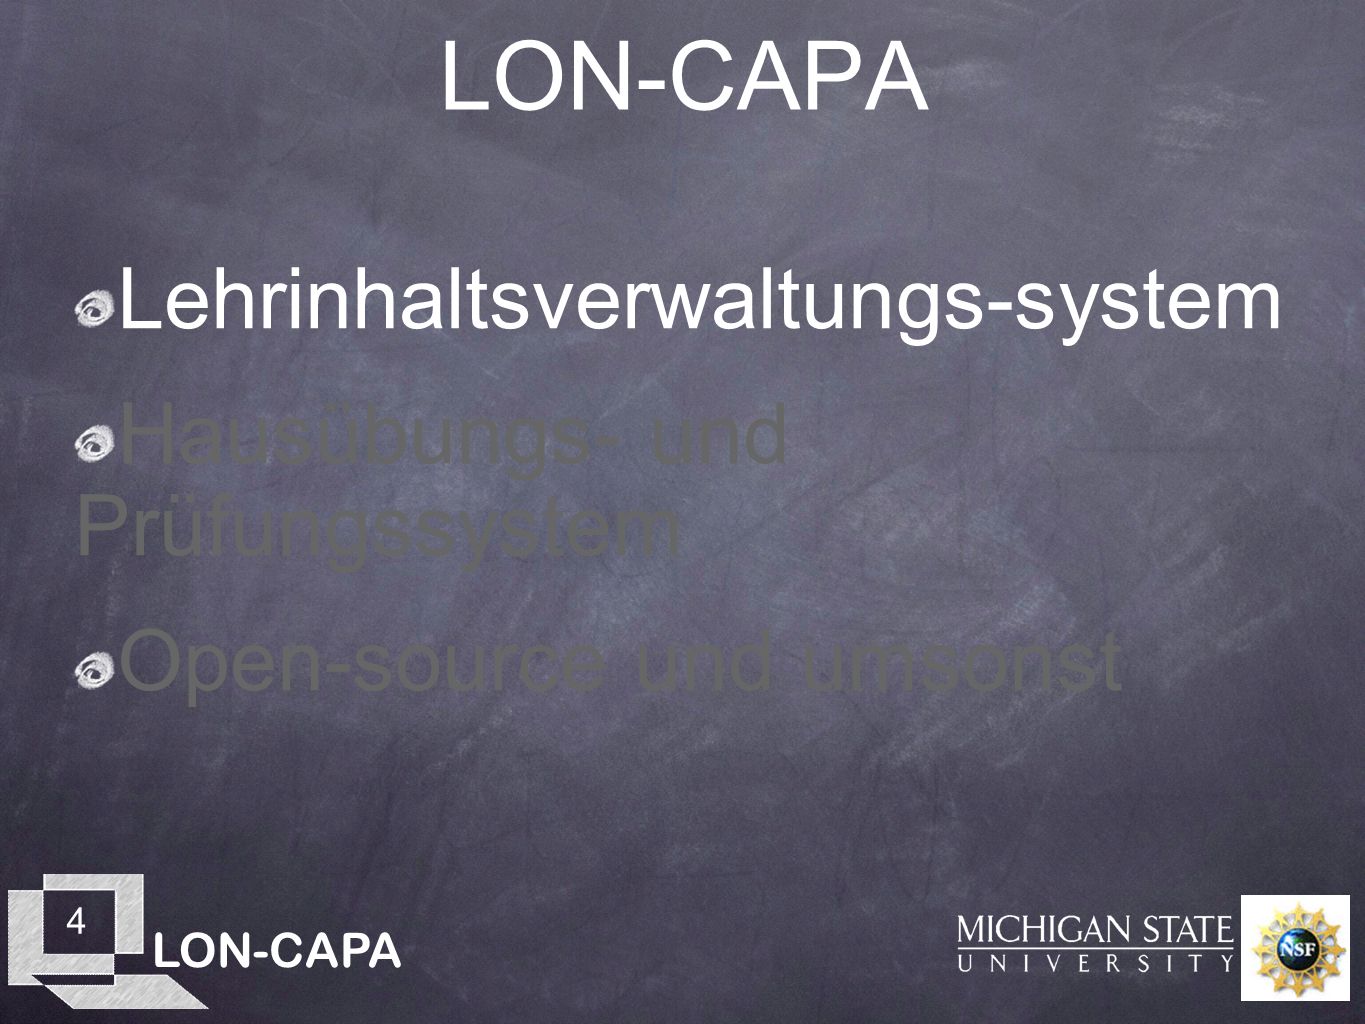 LON-CAPA 4 Lehrinhaltsverwaltungs-system Hausübungs- und Prüfungssystem Open-source und umsonst